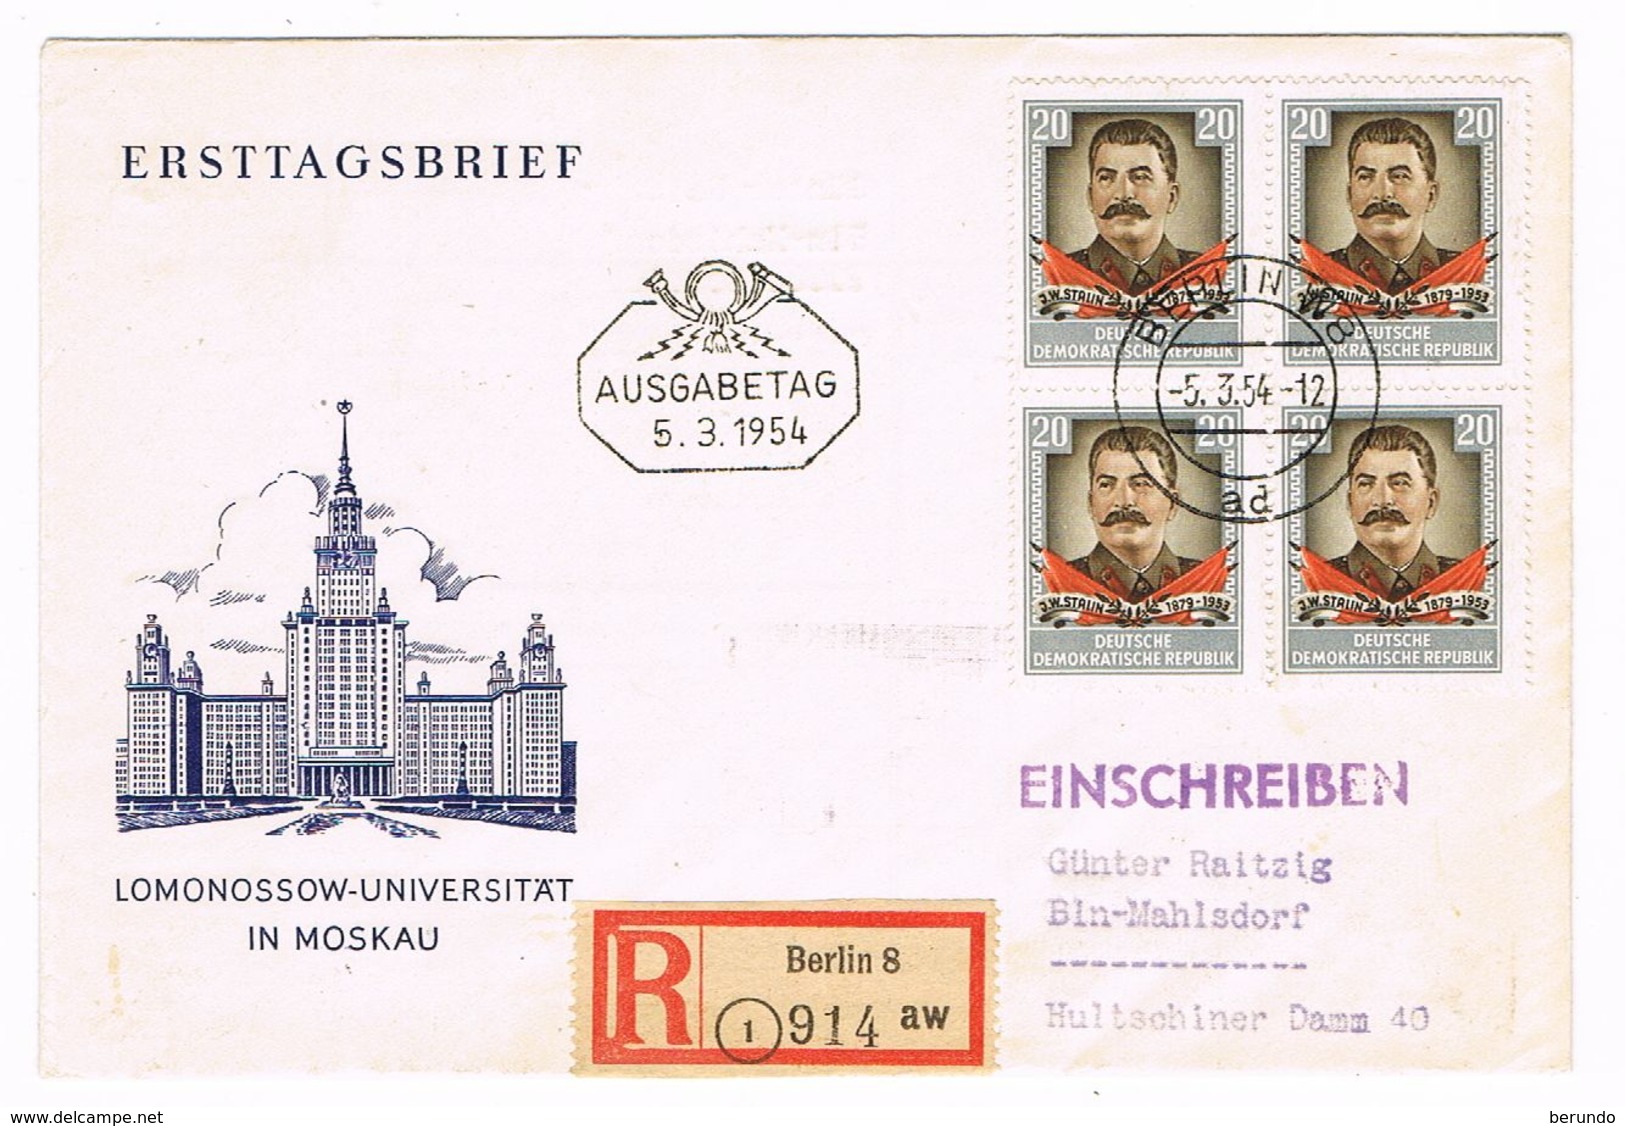 DEUTSCHLAND/ DDR - Stalin Michel # 425, Viererblock, 5.3.1954, Ersttag, R - Brief -1234 - Covers & Documents